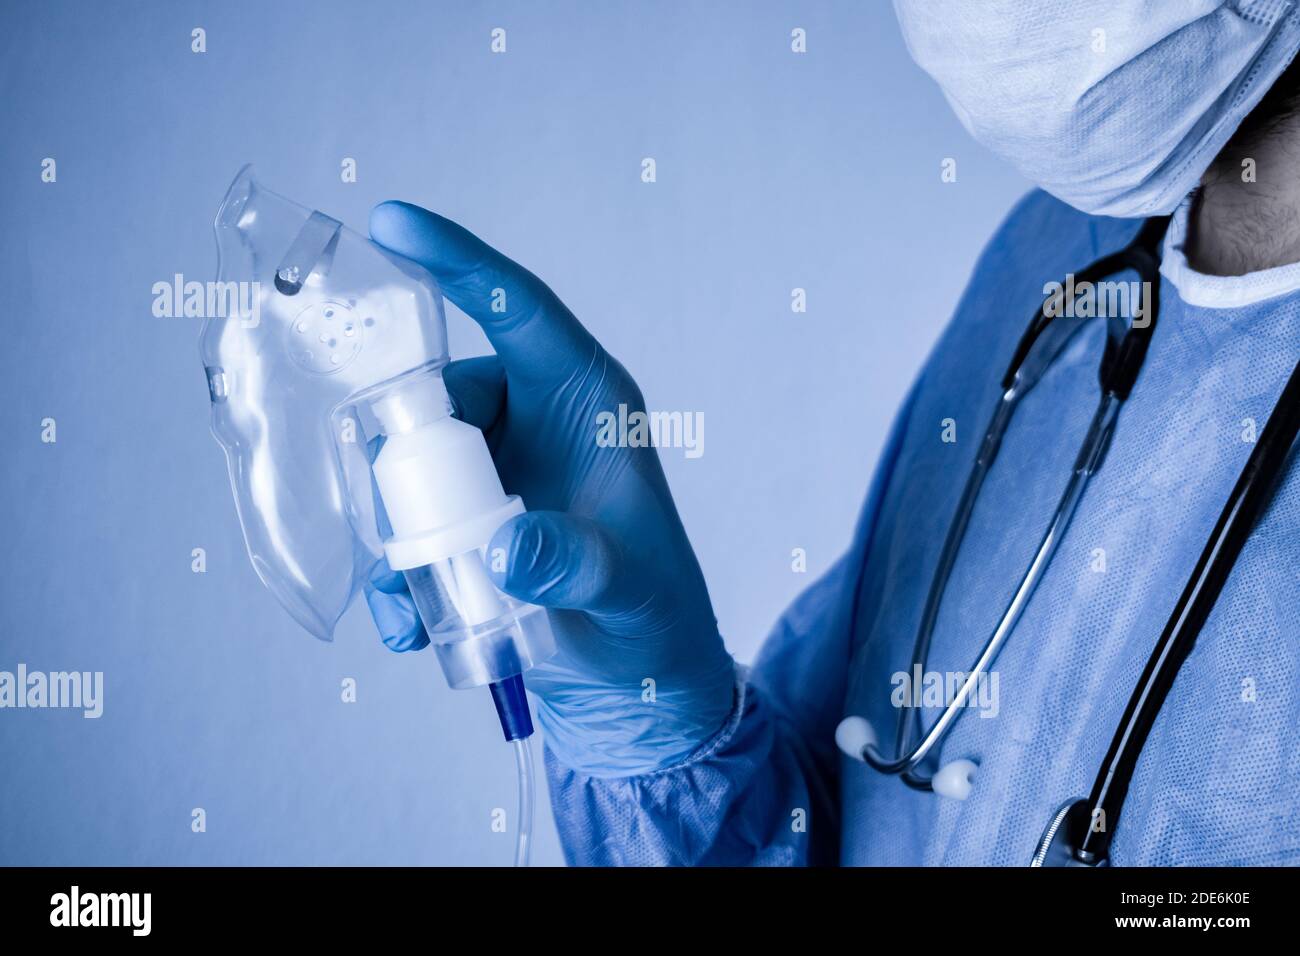 Médecin tenant un masque à oxygène dans la main. Photographie conceptuelle de l'éclosion de Covid-19 et du coronavirus. Banque D'Images